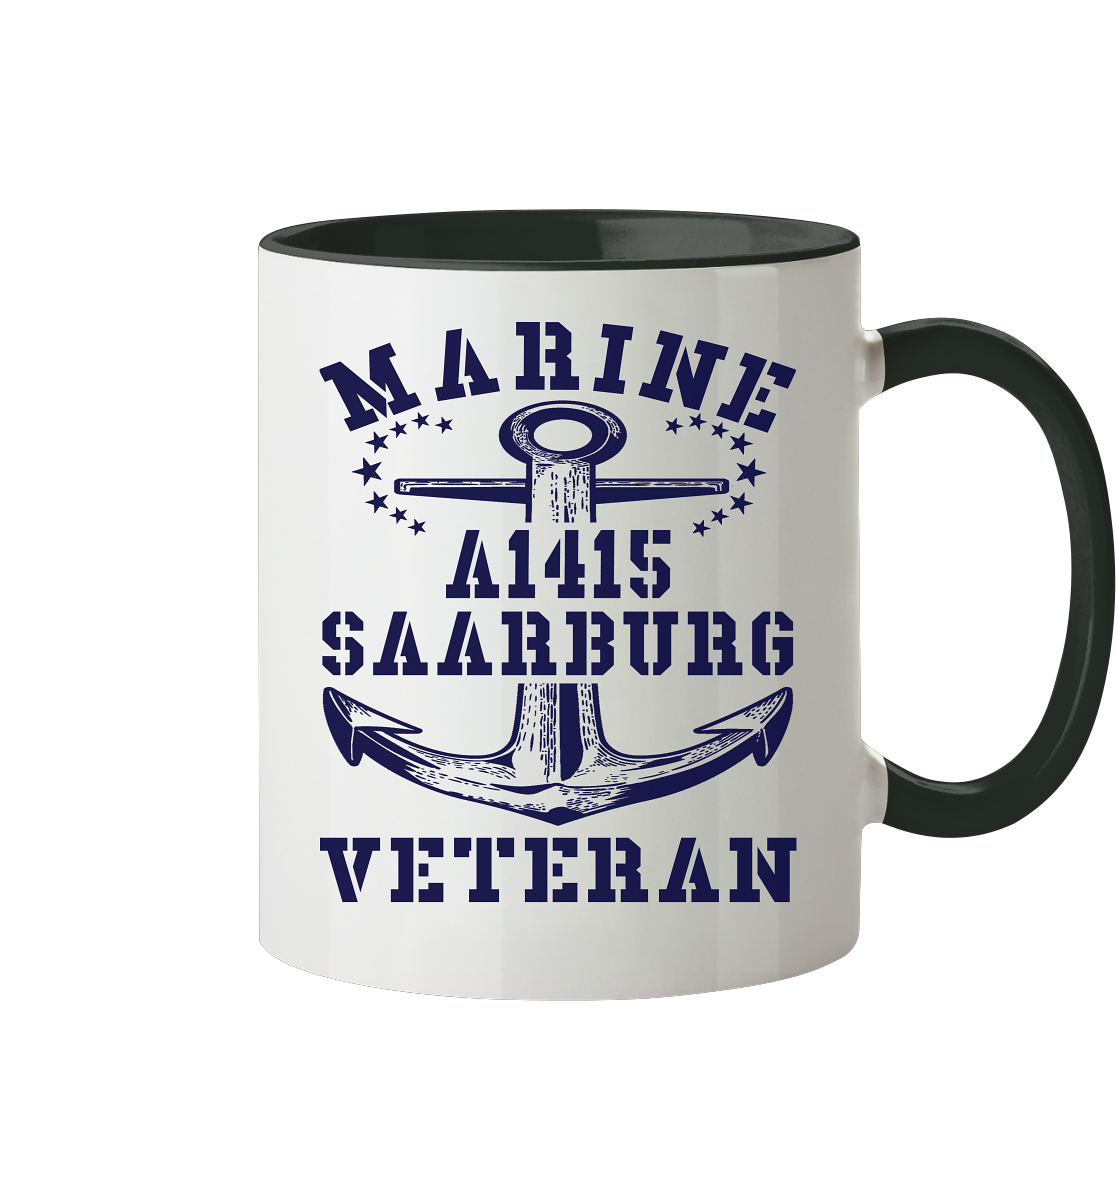 Troßschiff A1415 SAARBURG Marine Veteran - Tasse zweifarbig